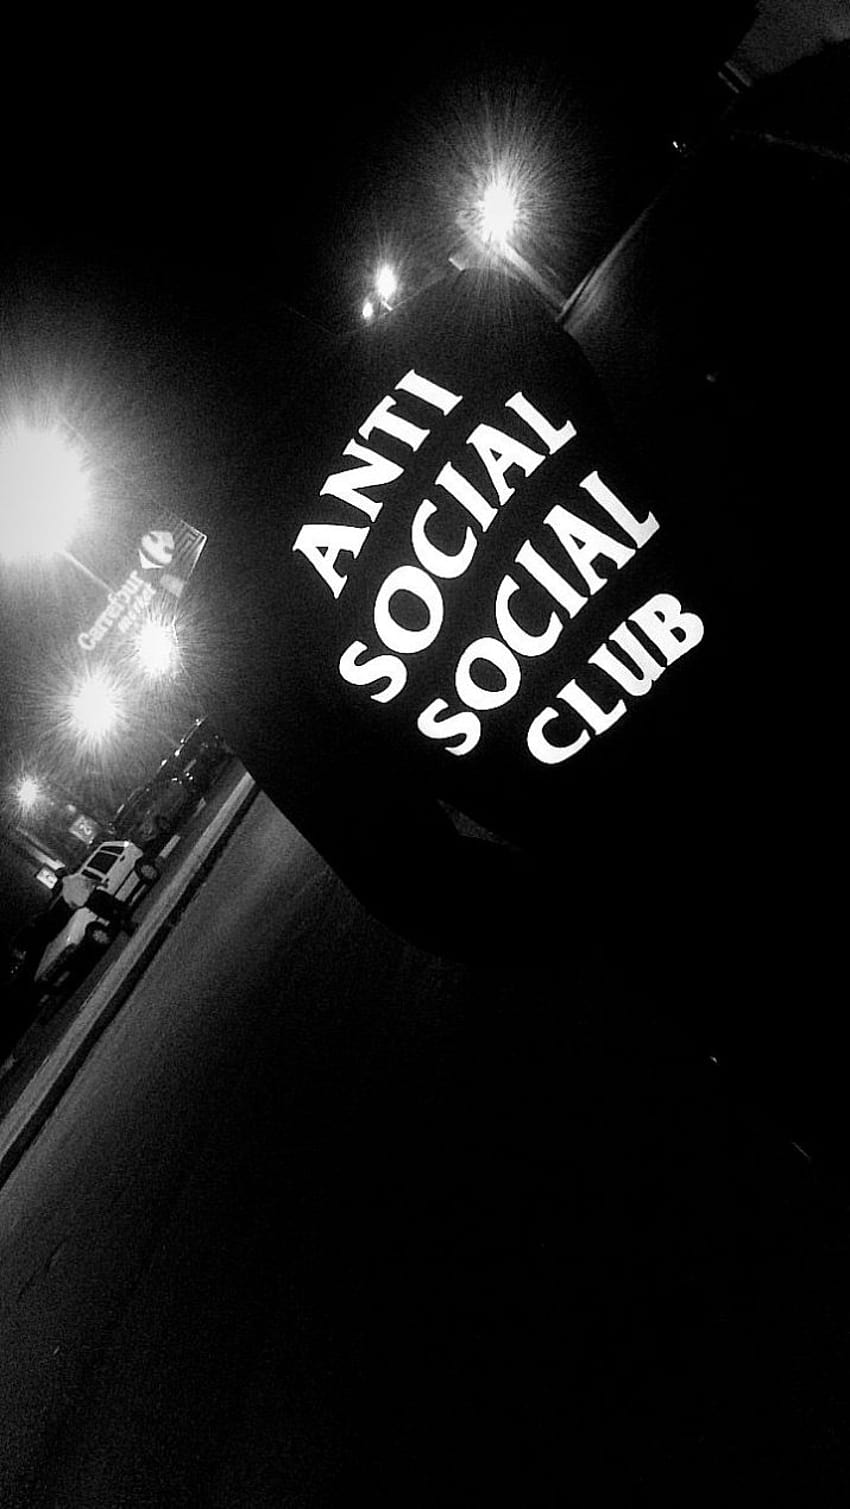 Anti social social club, aesthetic anti social HD phone wallpaper